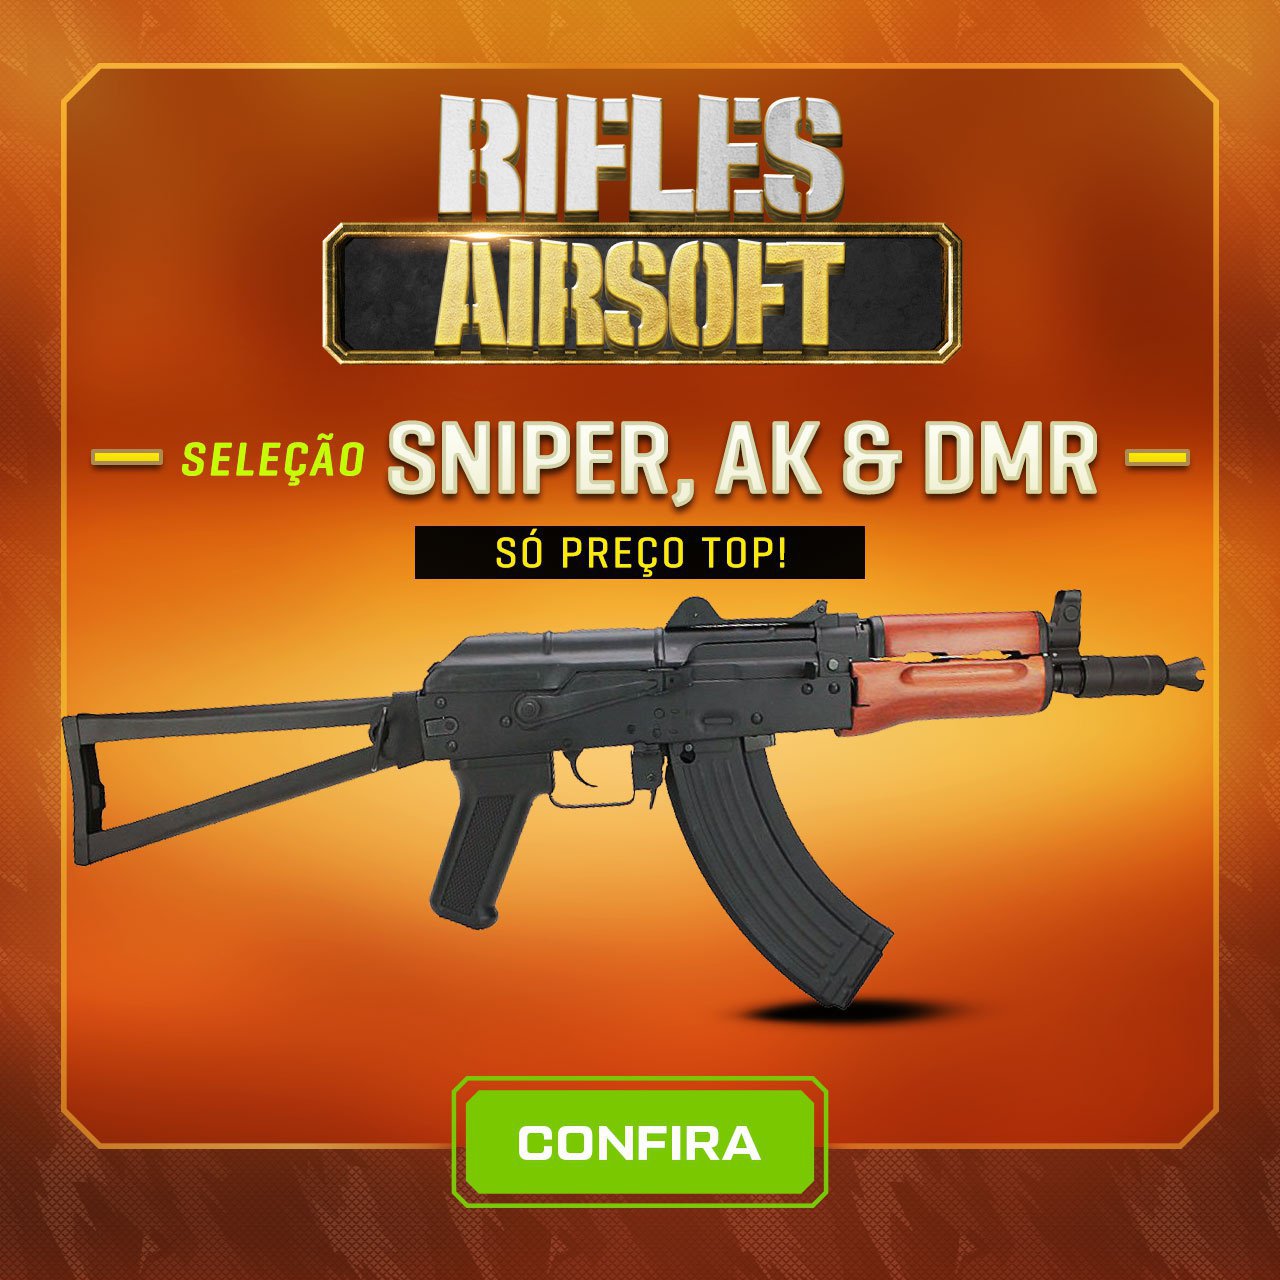 Rifles Airsoft - Seleção Sniper, AK & DMR - Só preciso TOP!